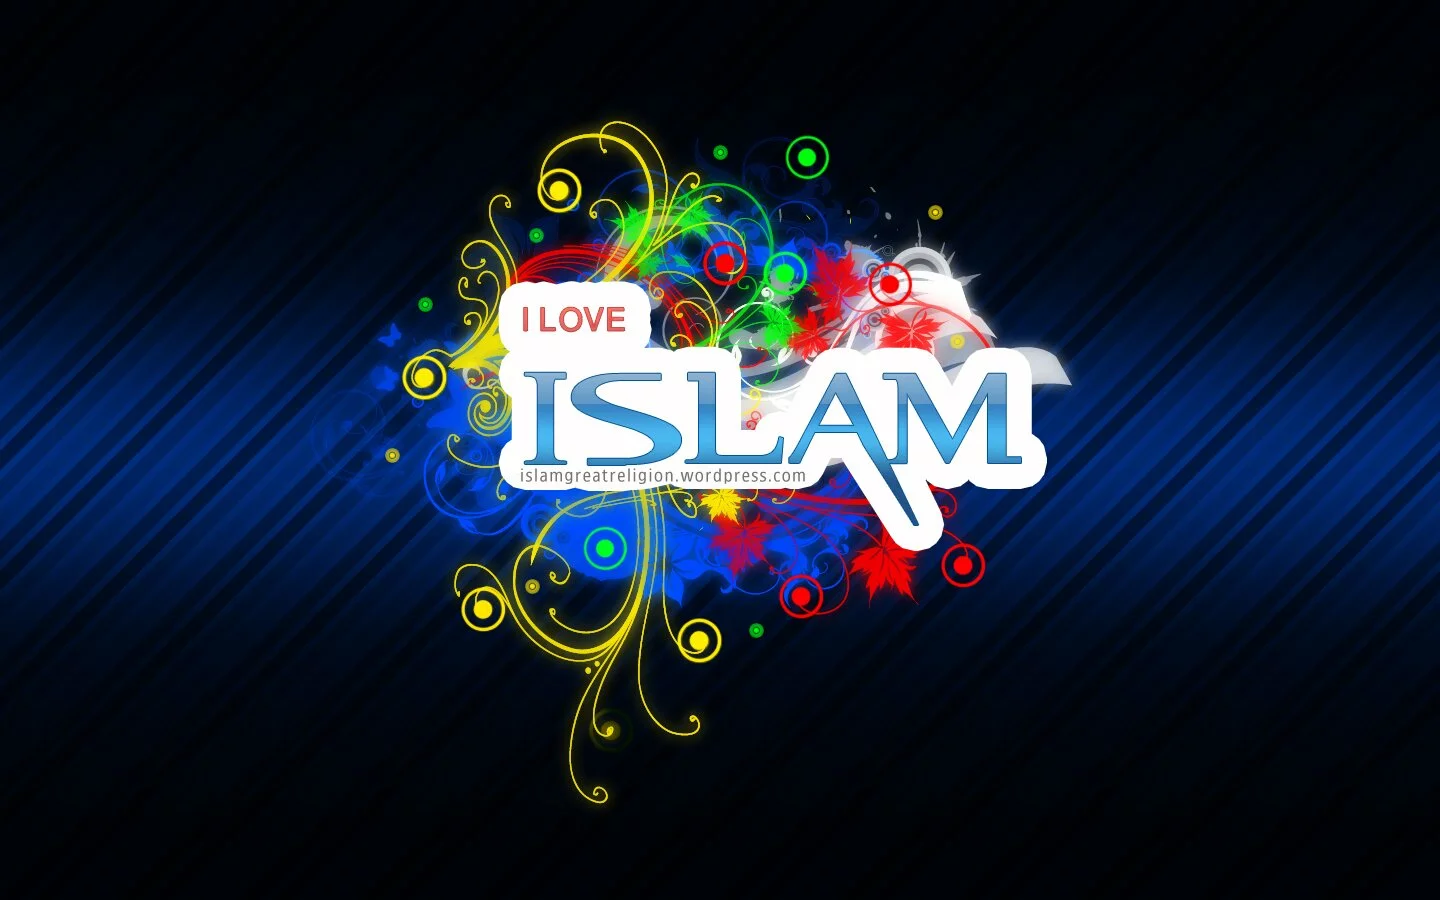 free iloveislam islamic wallpaper 2012 hd I Love Islam Beautiful Islamic Desktop Wallpaper